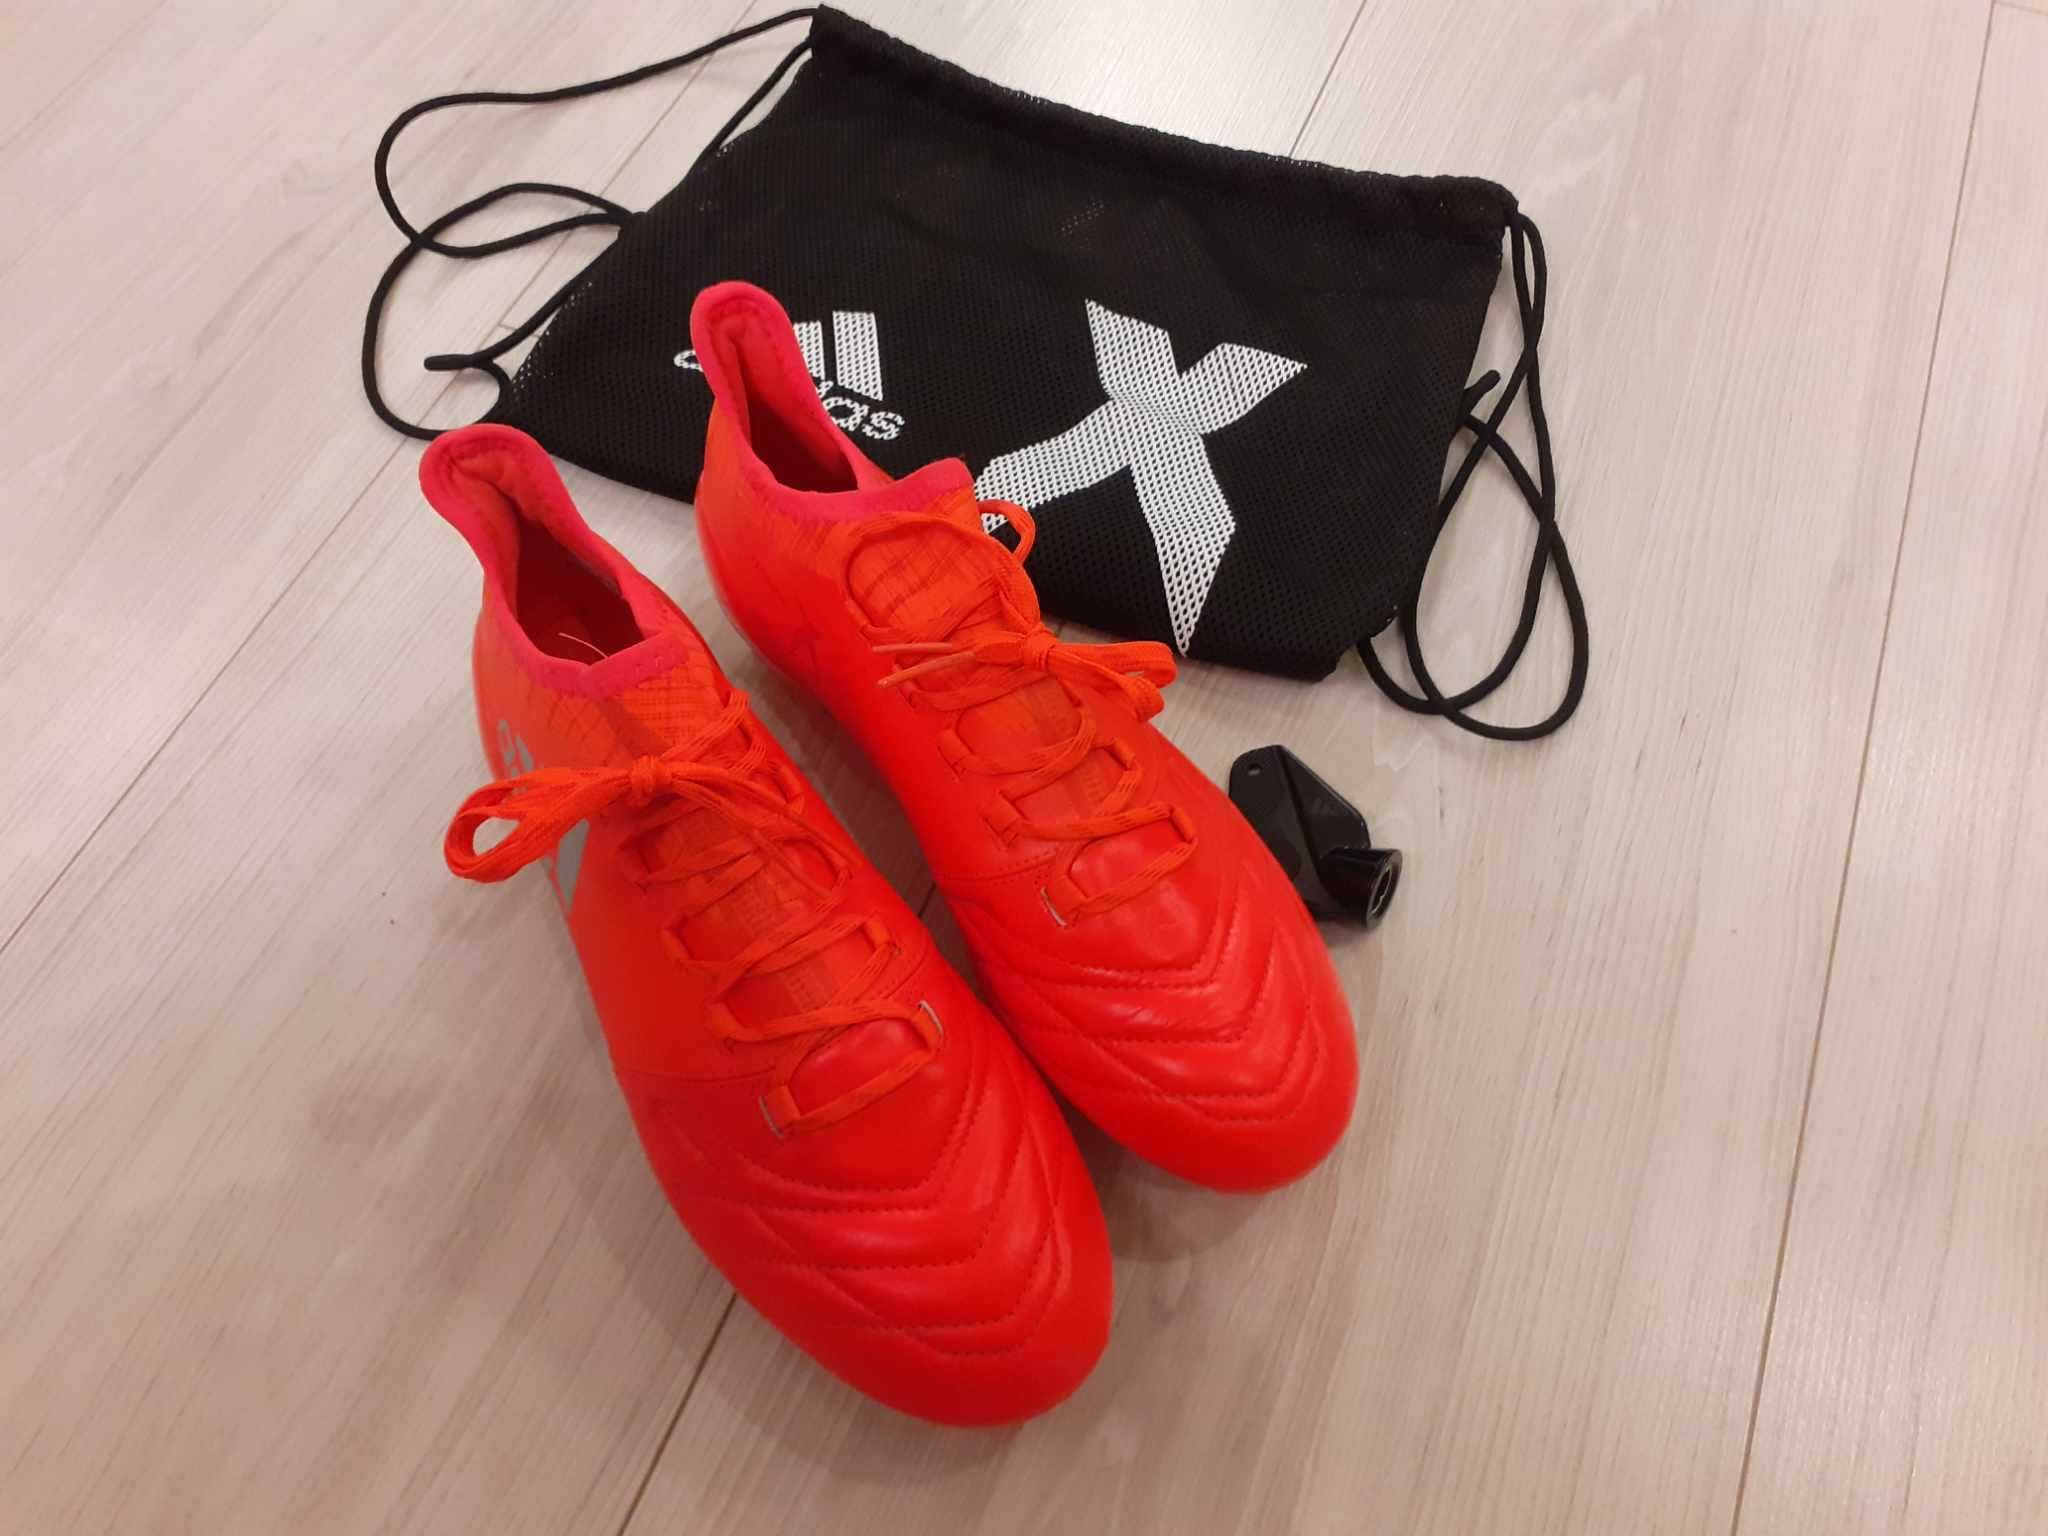 Profesjonalne buty piłkarskie korki adidas X16.1 SG Leather, r. 41 1/3